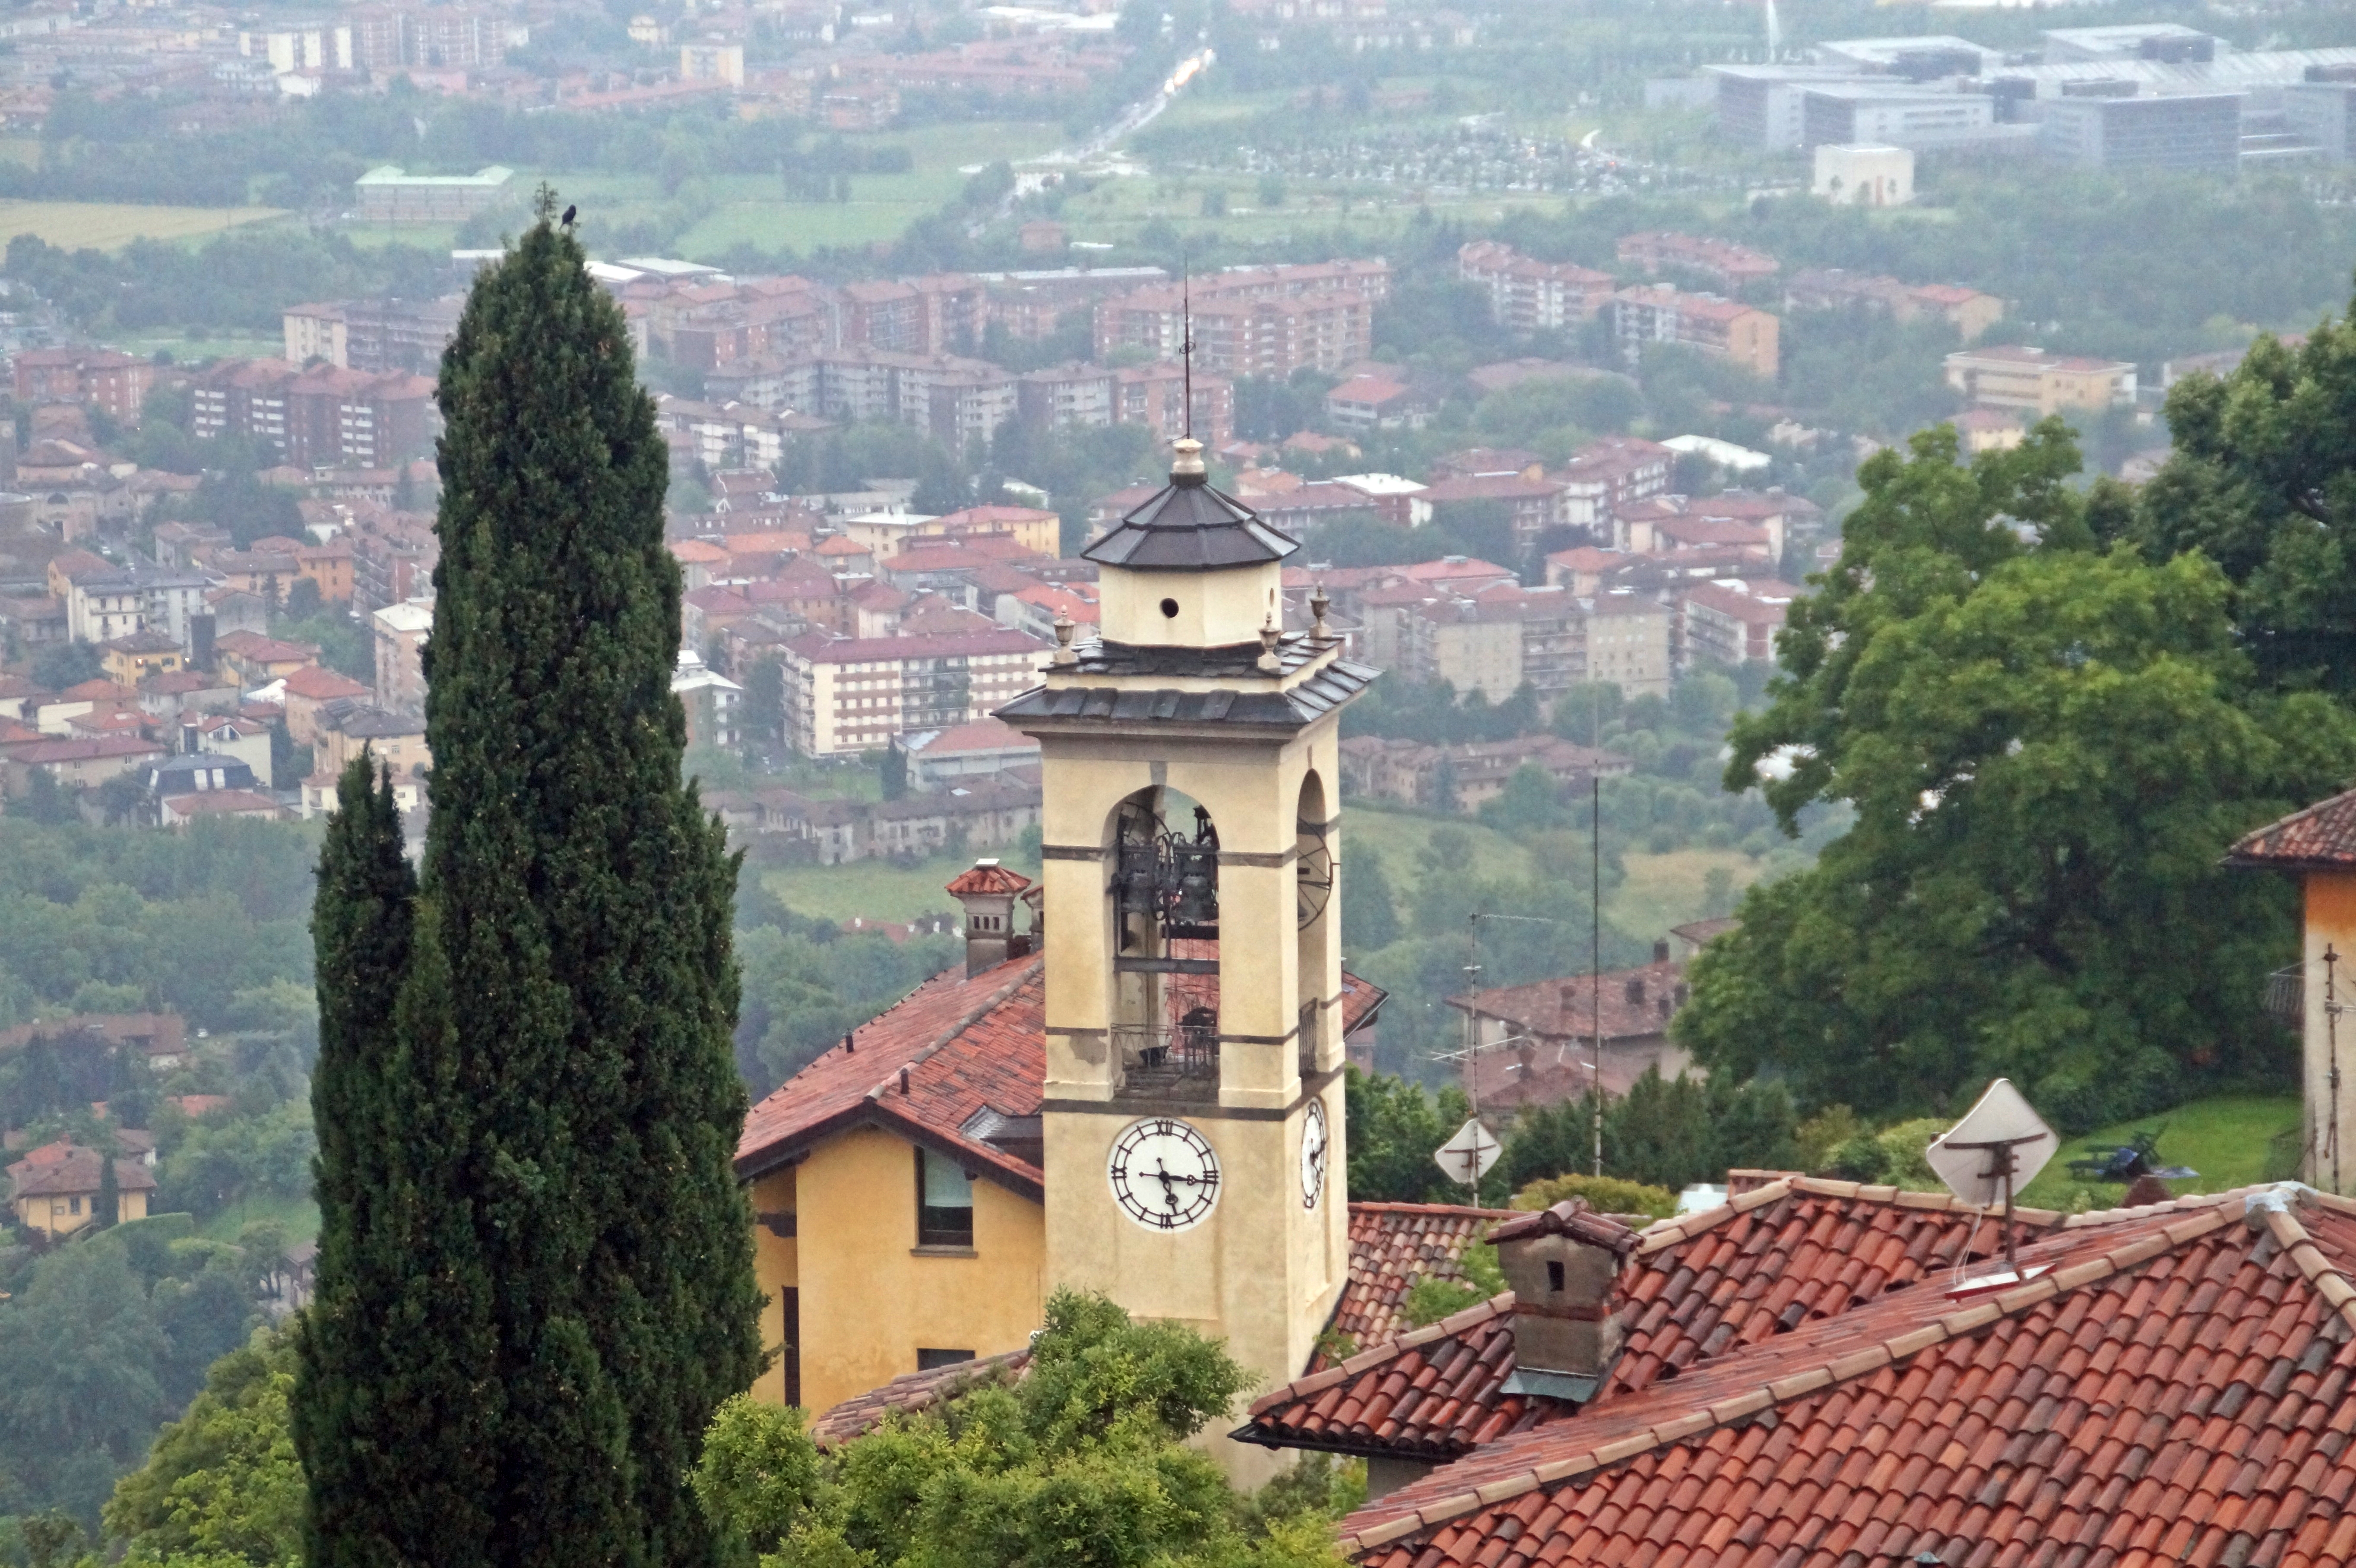 A beautiful church in Bergamo